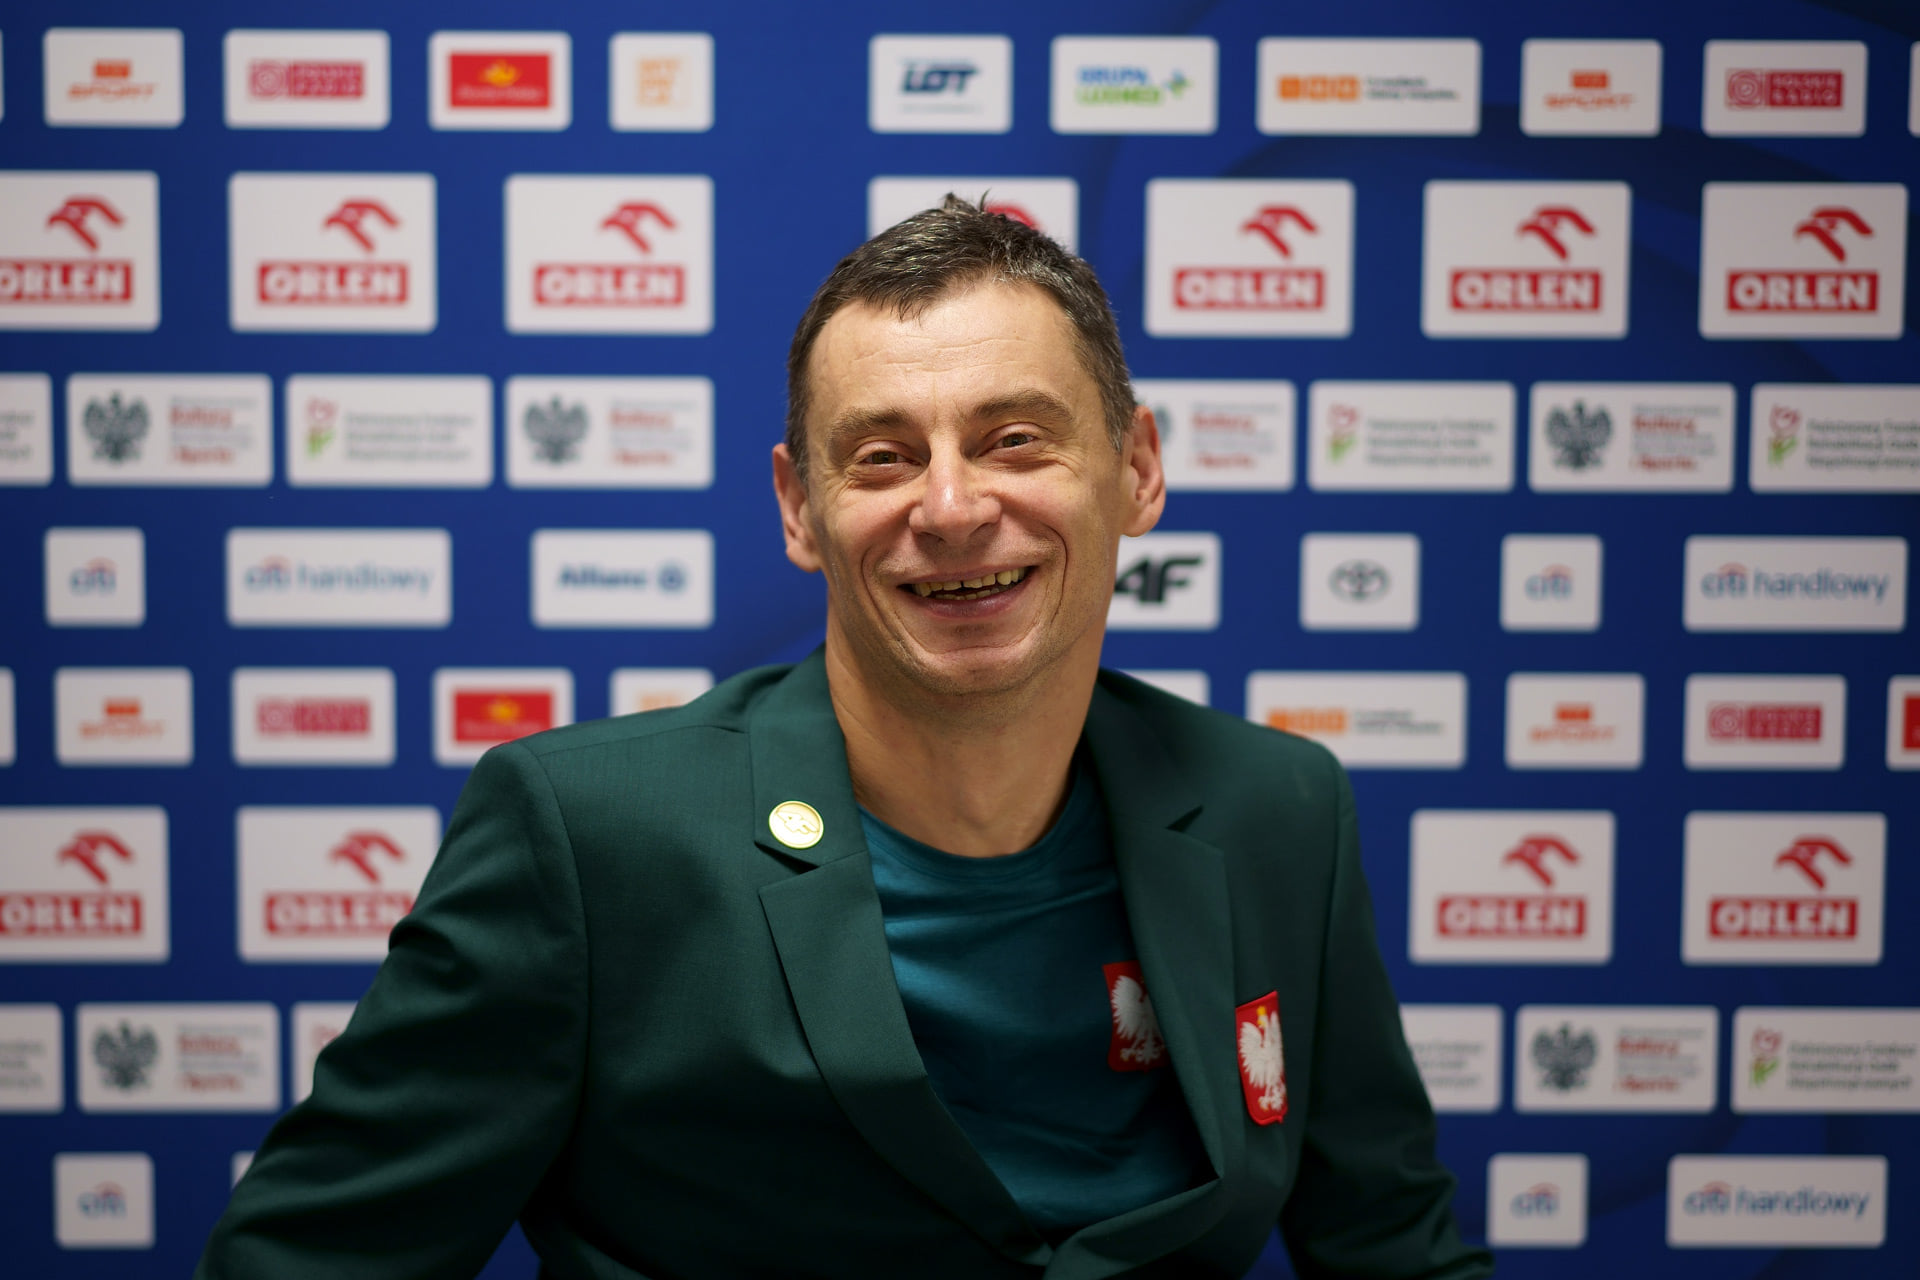 Na zdjęciu znajduje się uśmiechnięty Jacek Czech.